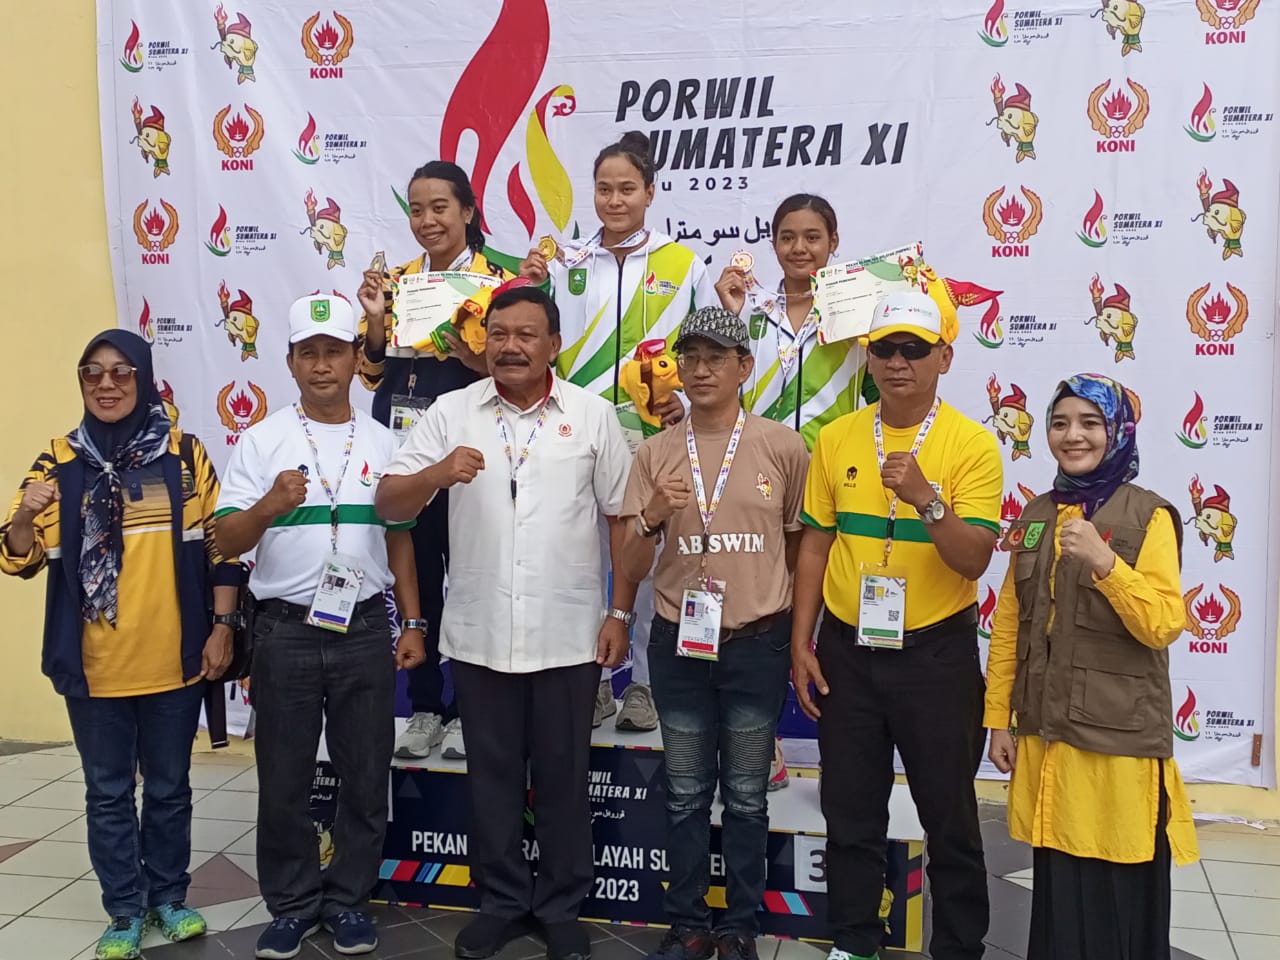 Renang Riau Tambah 10 Medali di Hari Kedua Pertandingan Porwil XI